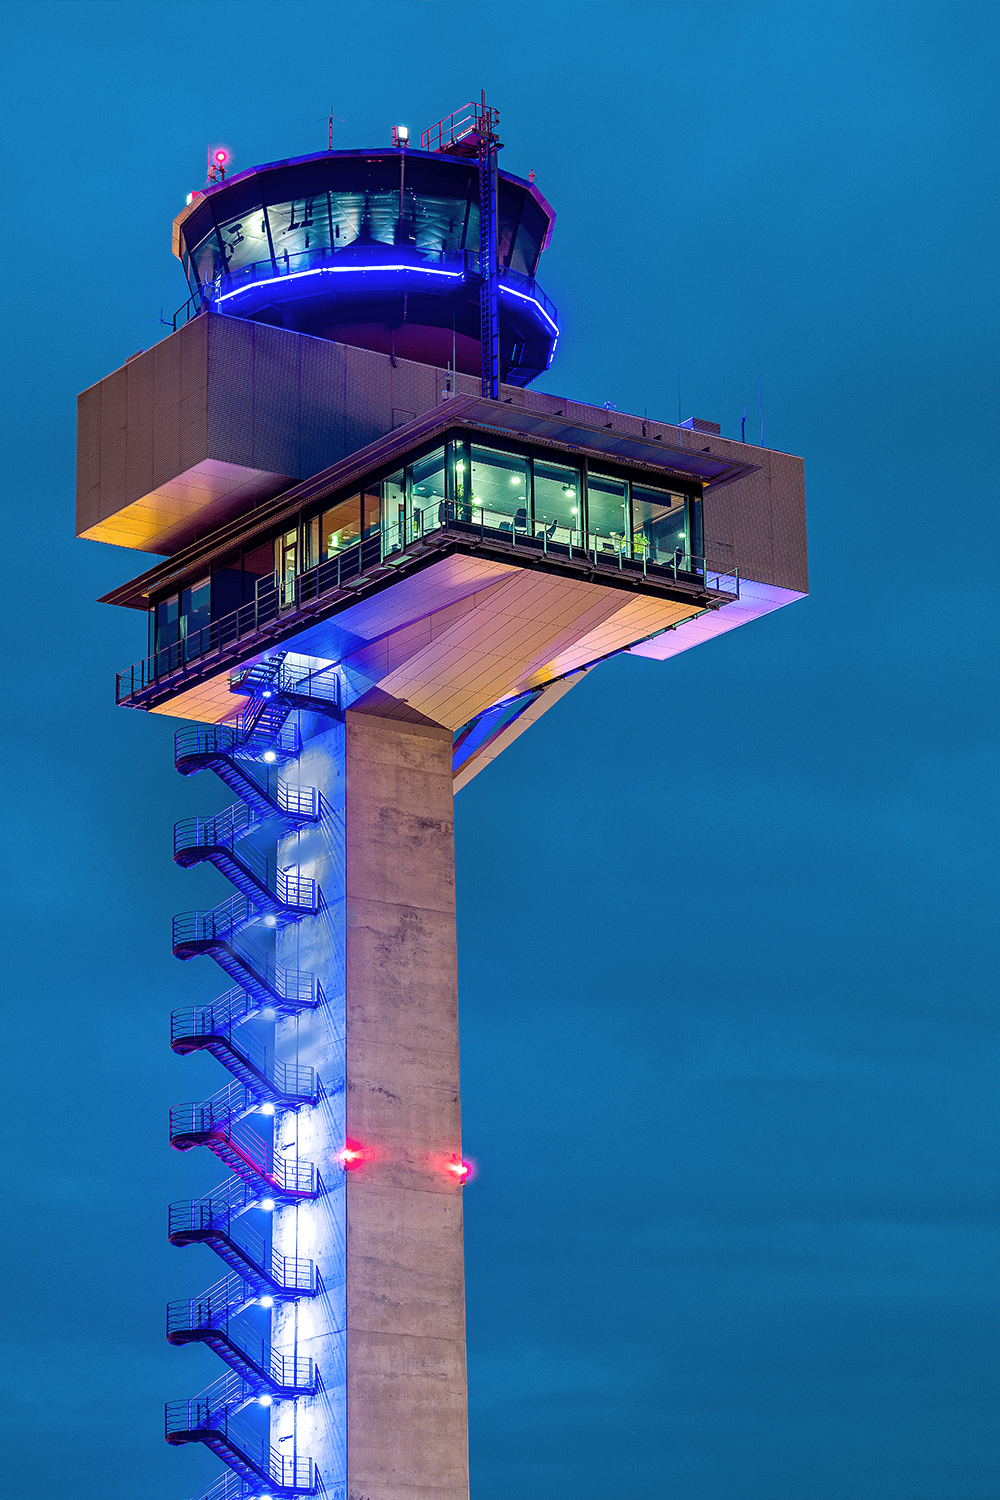 Turm zum Beobachten der Flugzeuge am BER